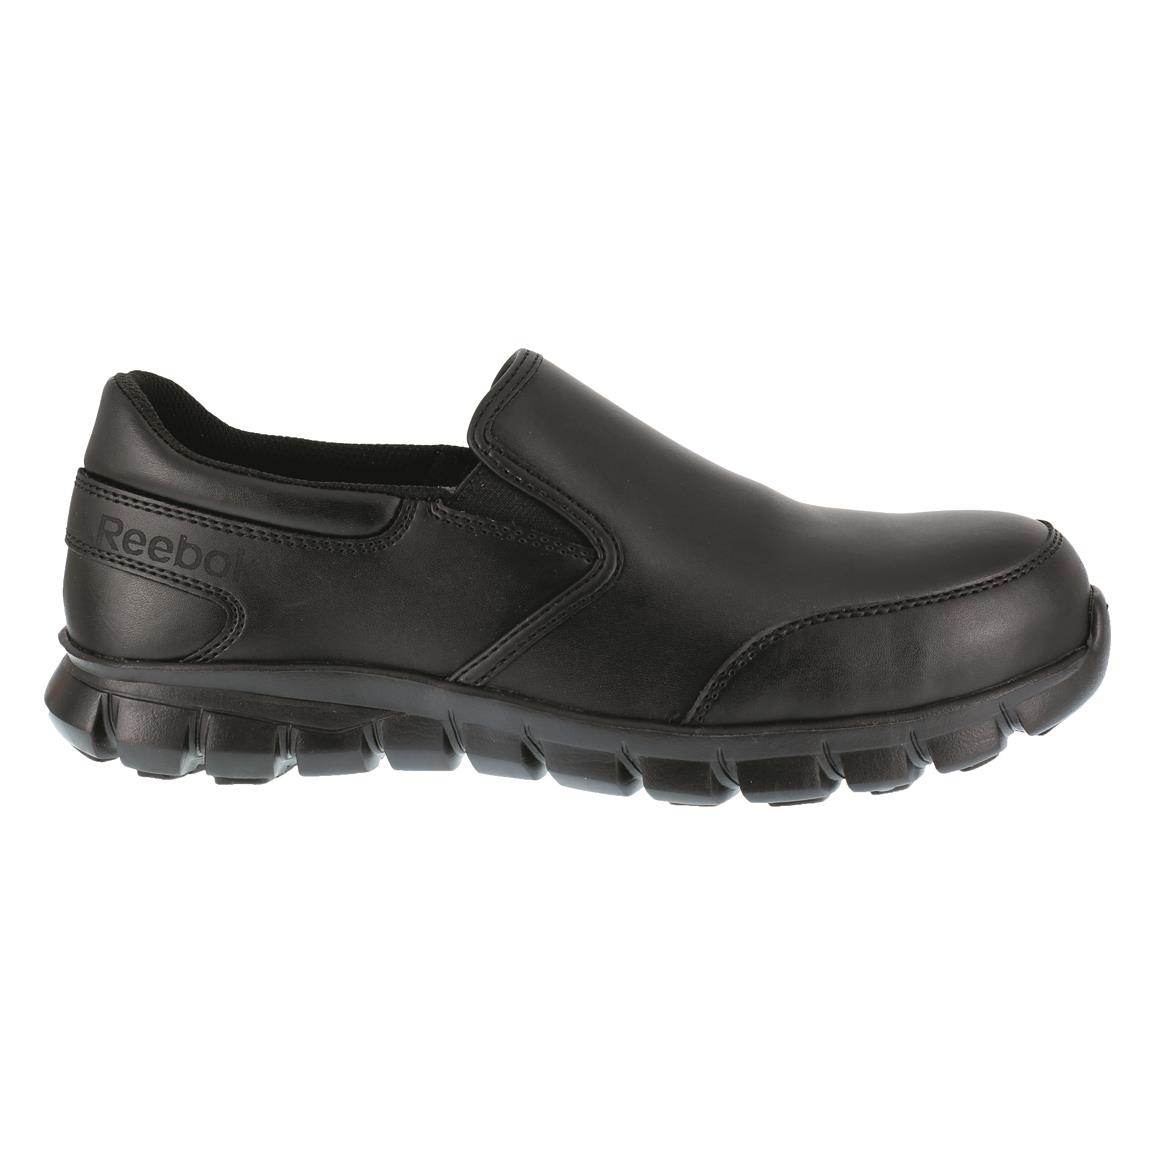 DryShod Legend Neoprene Rubber Camp Shoes - 708388, Rubber & Rain Boots ...